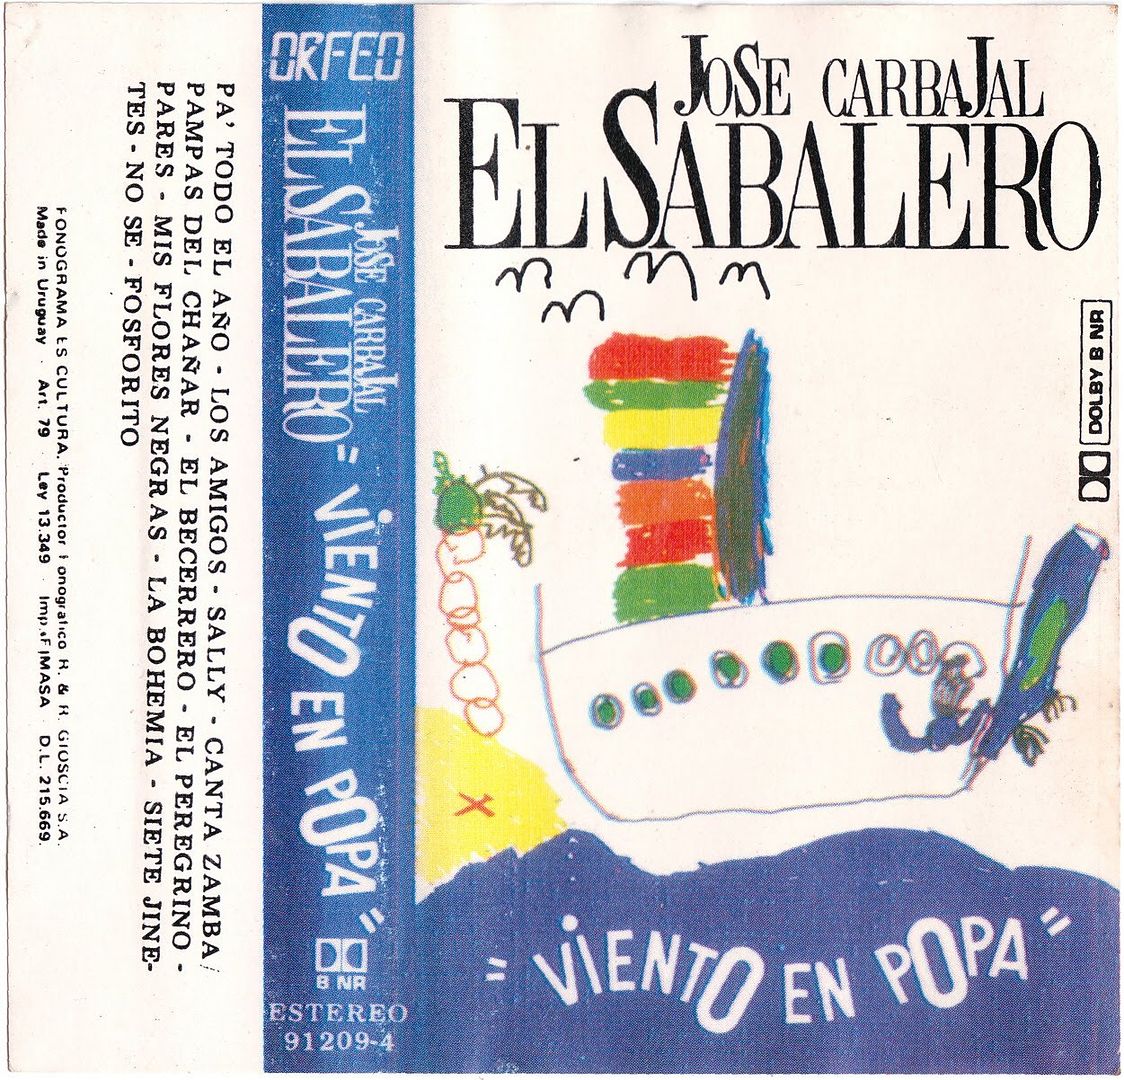 JosC3A9Carbajal Vientoenpopa cassettetapa - José Carbajal "El Sabalero" - Viento en popa (1993)